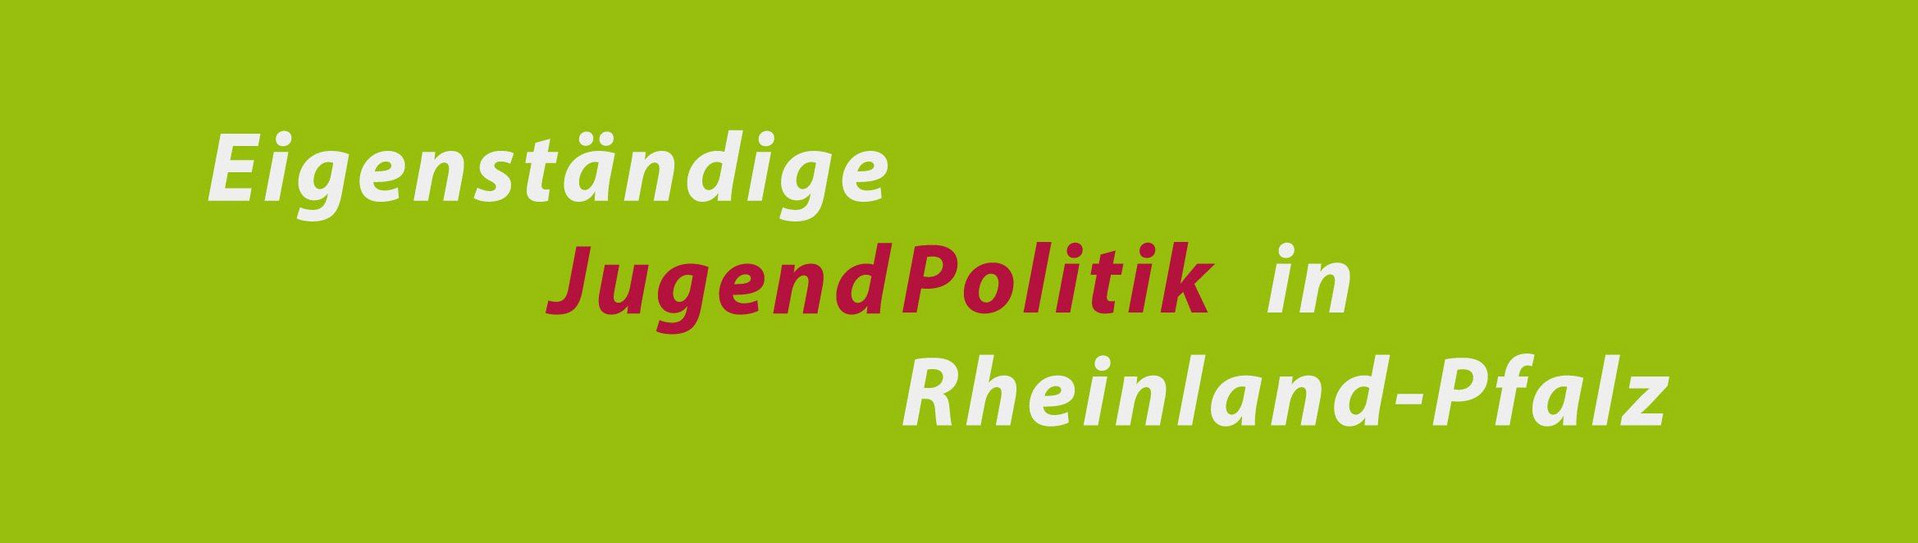 Schriftzug "Eigenständige Jugendpolitik in Rheinland-Pfalz"